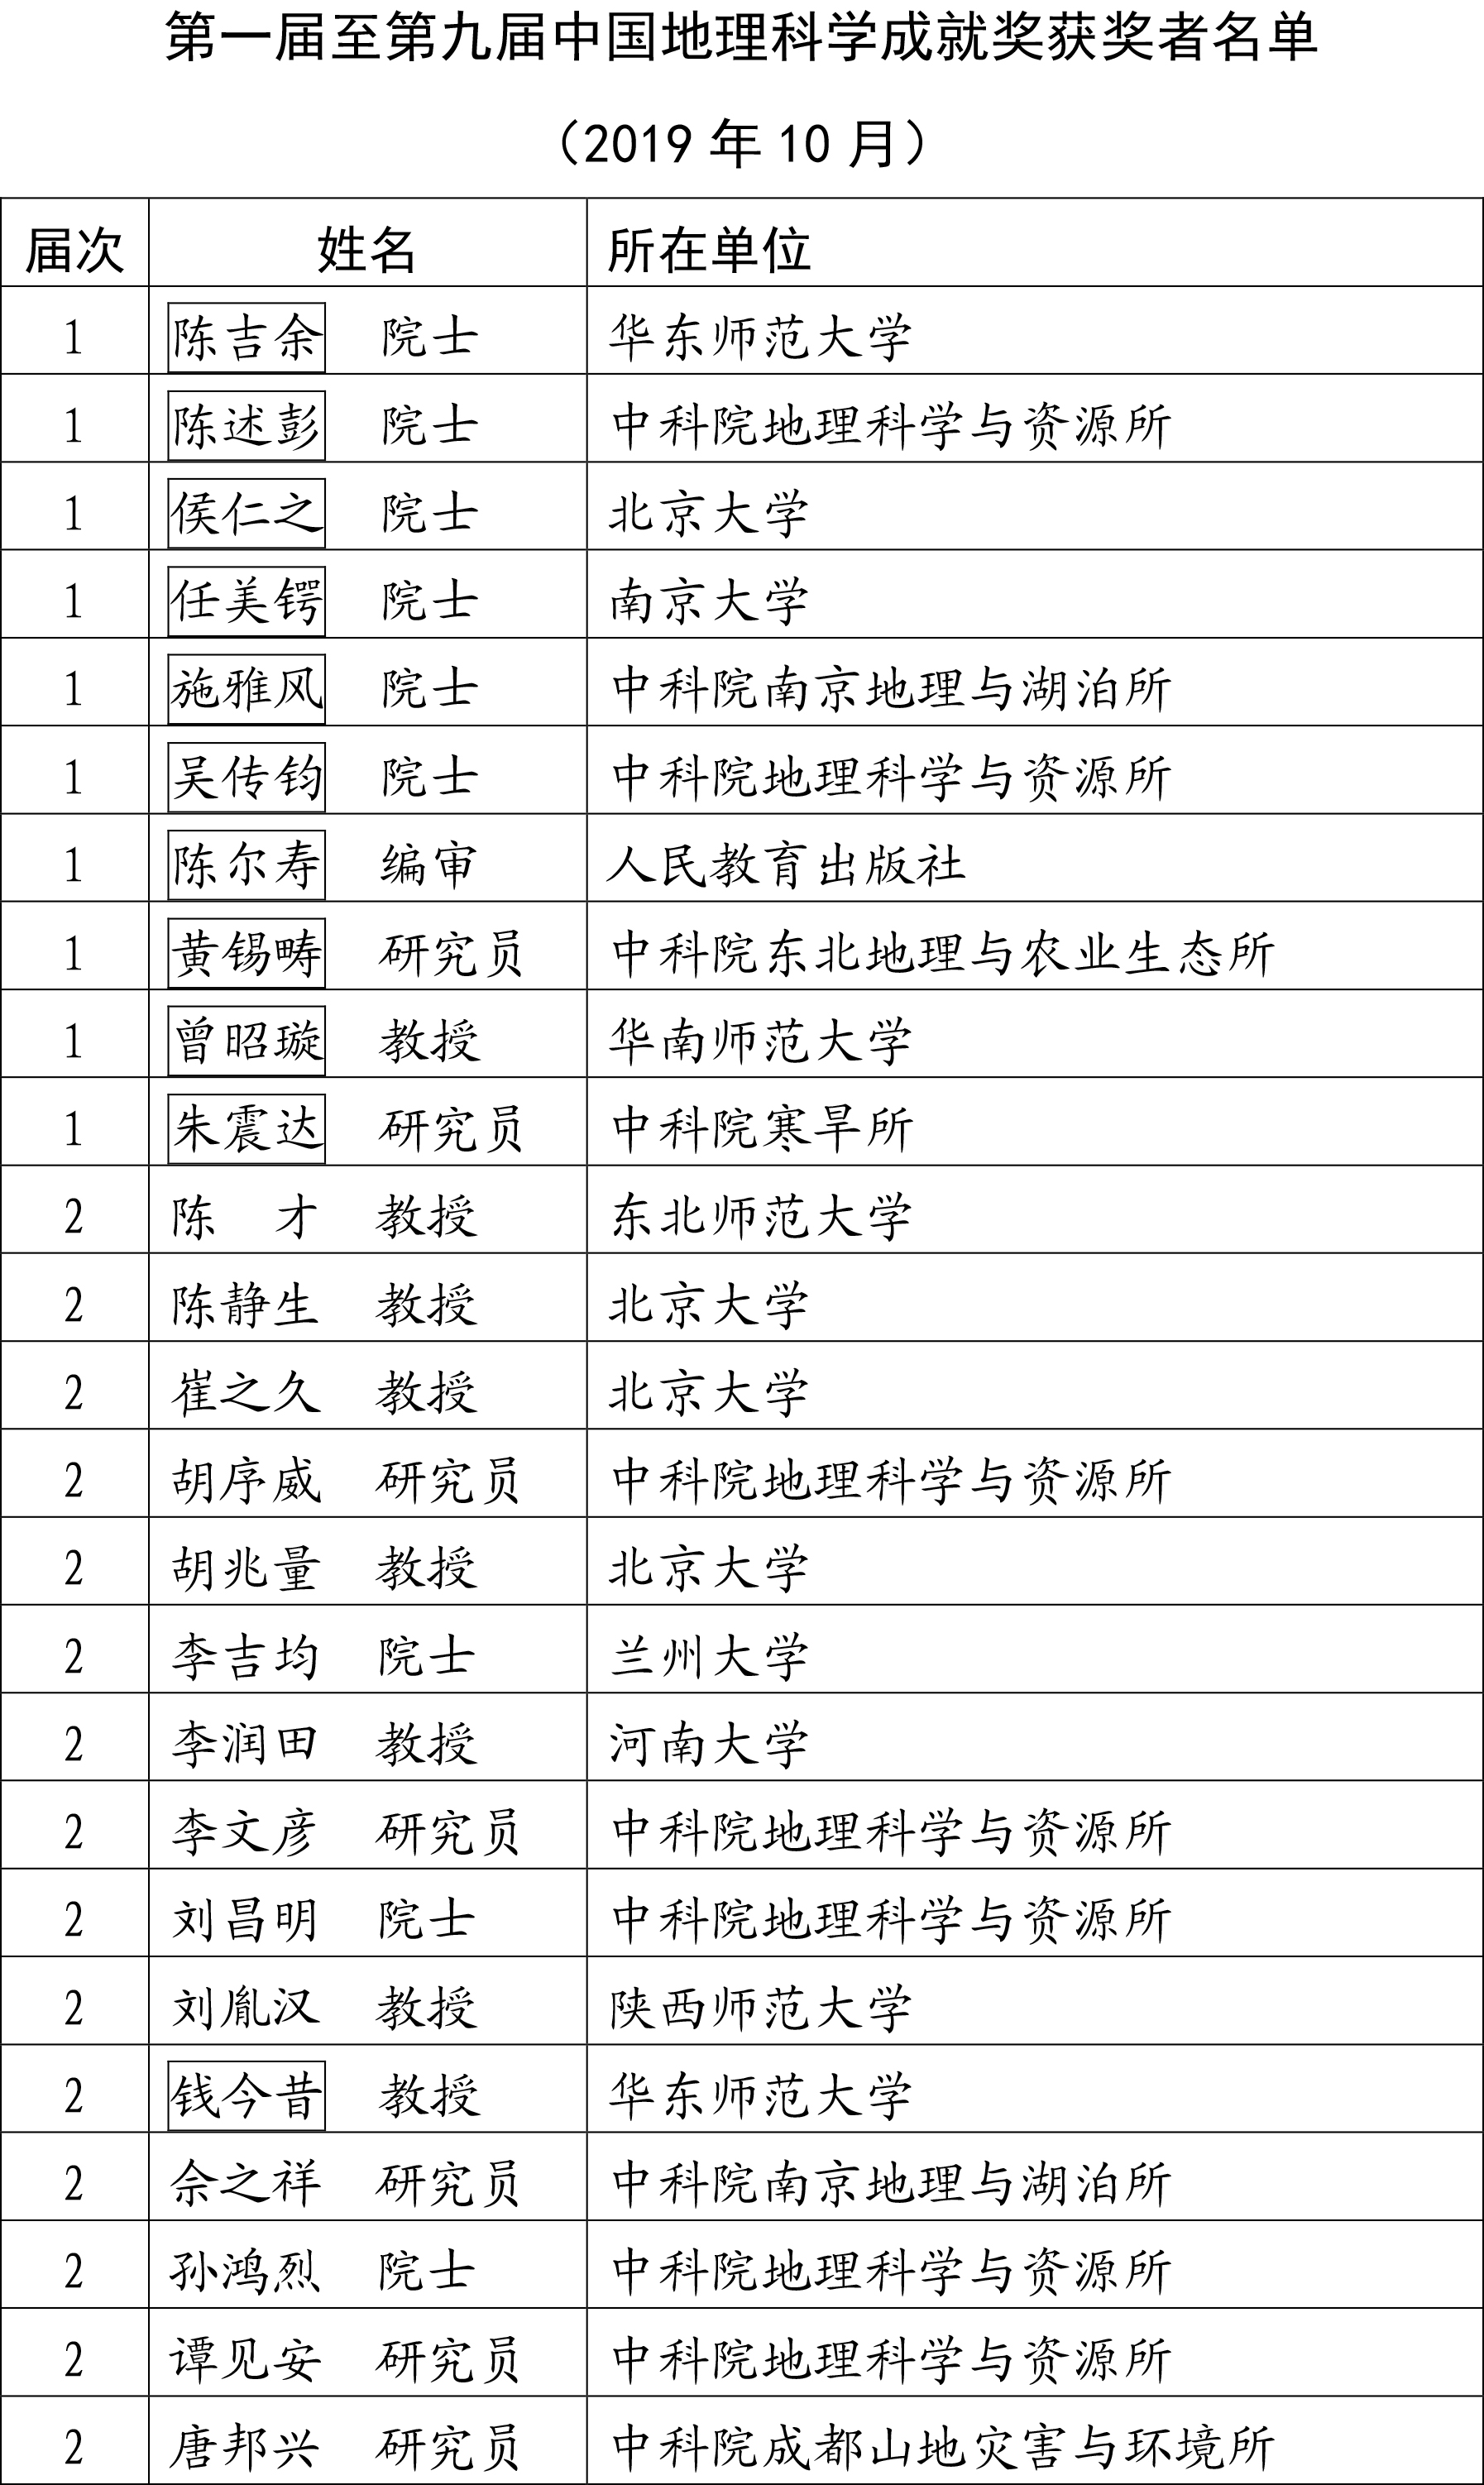 第一届至第九届中国地理科学成就奖获奖者名单-1.jpg